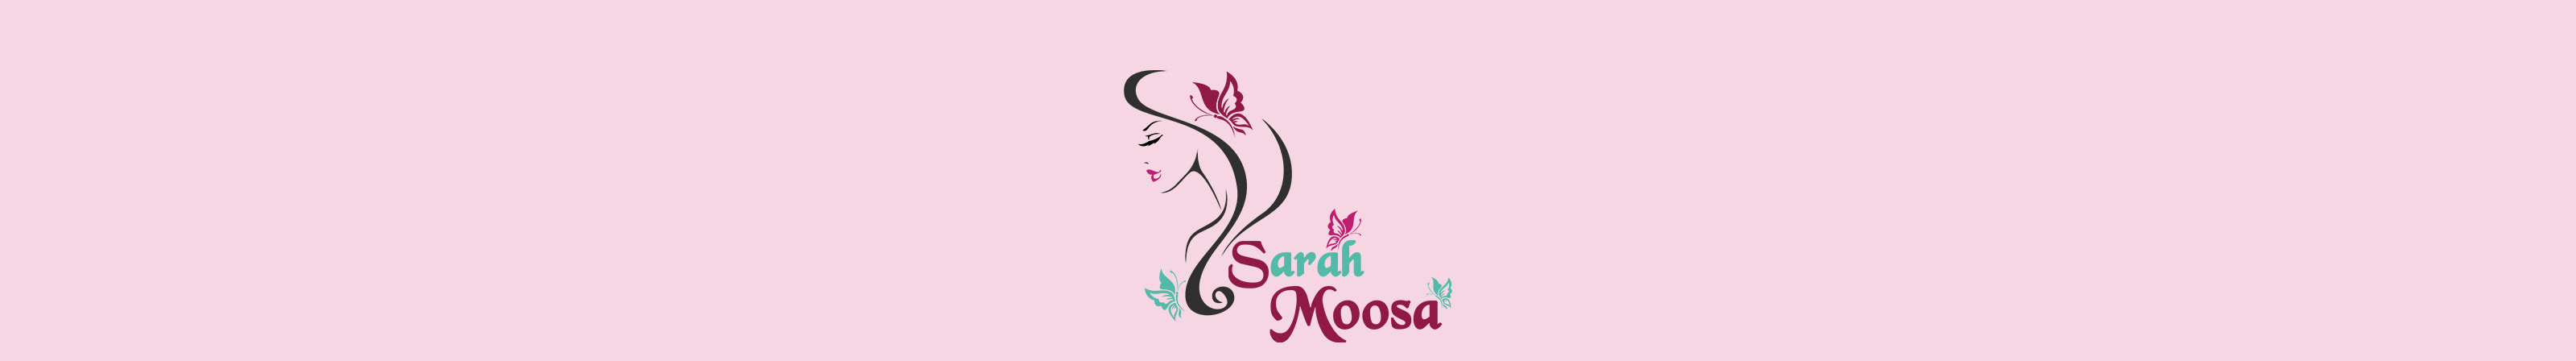 Баннер профиля sarah moosa